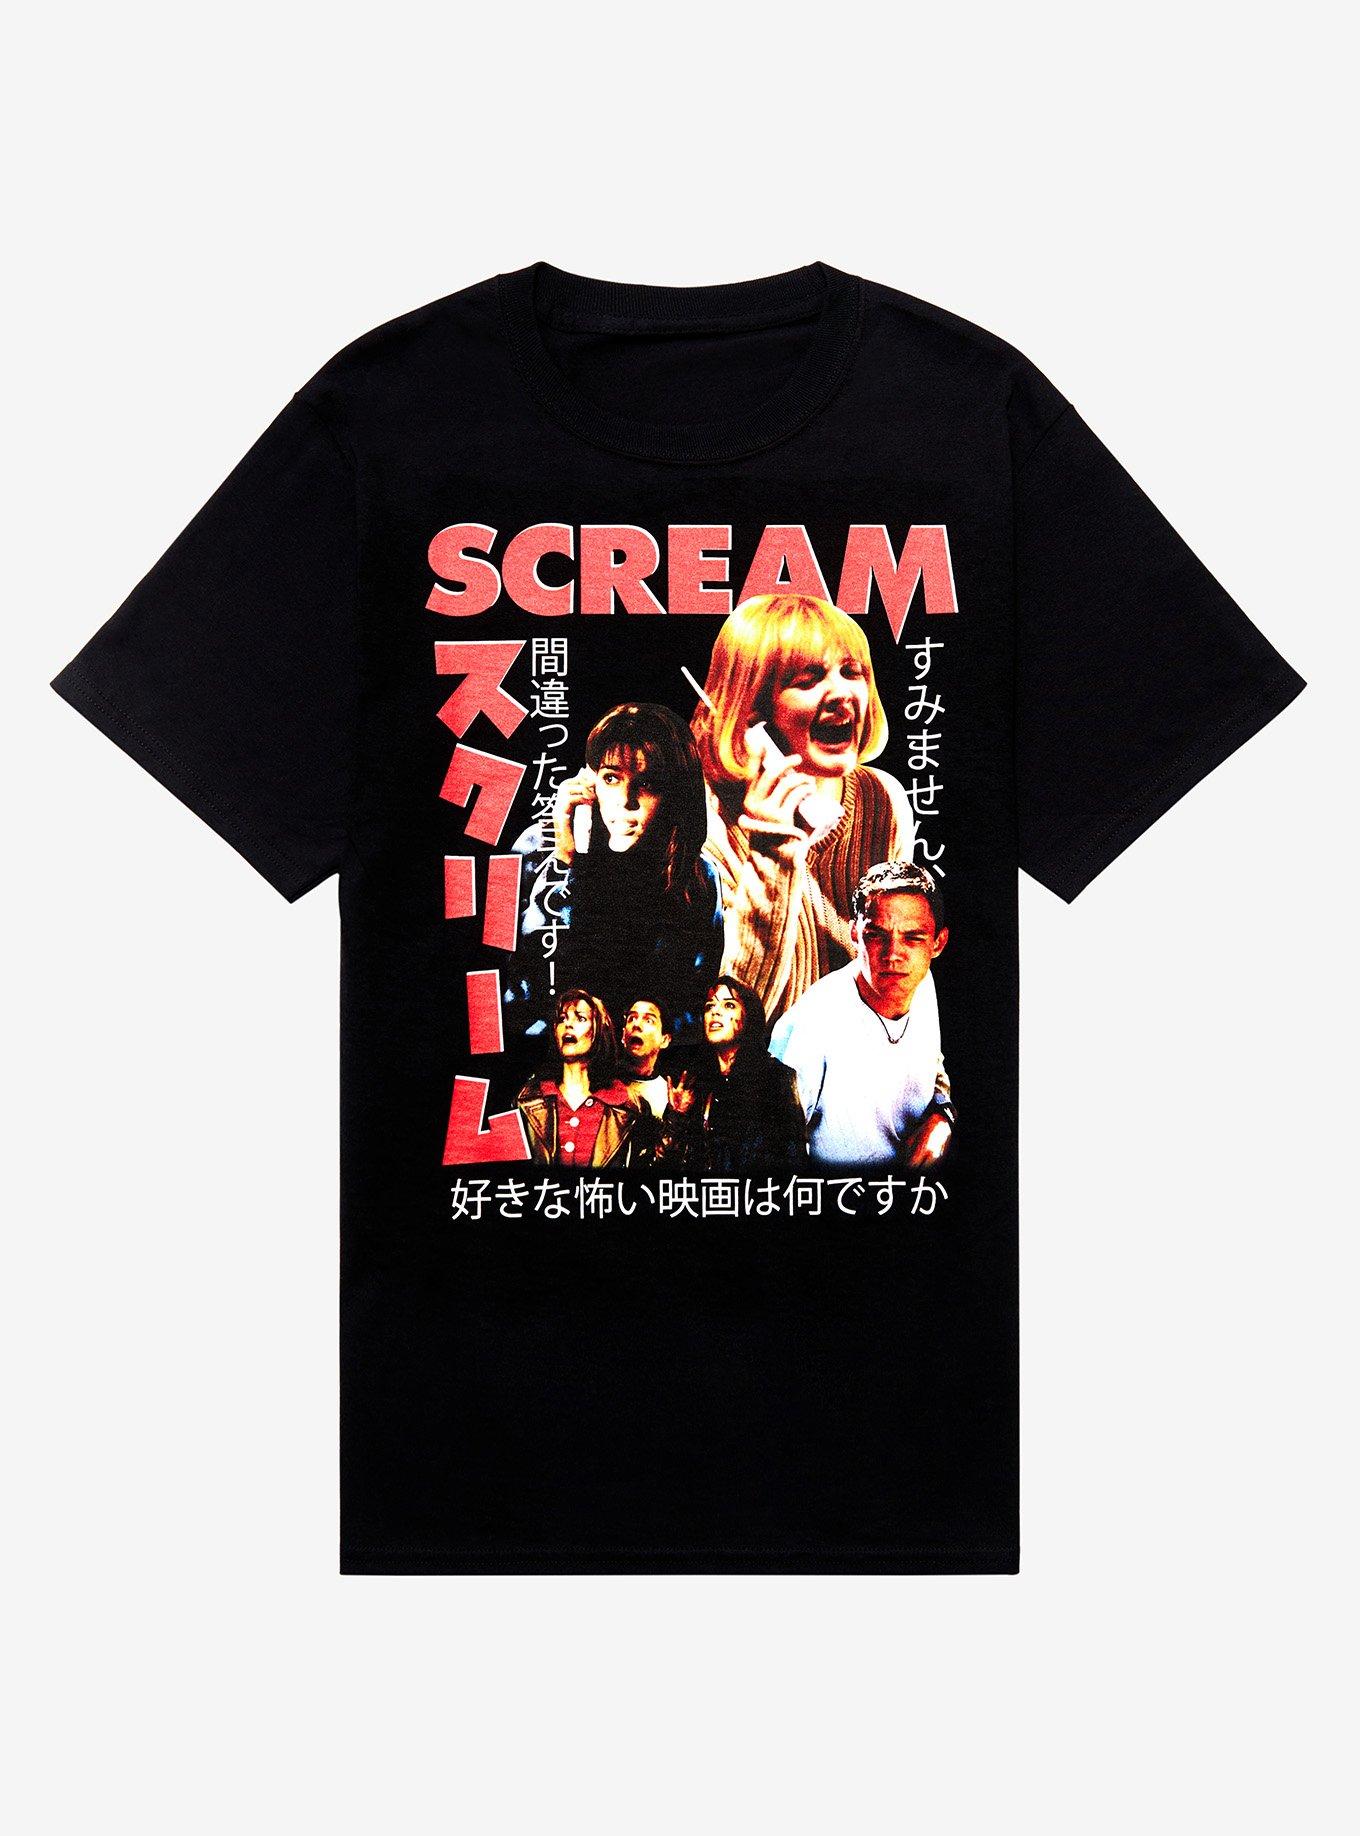 Scream Collage Boyfriend Fit Girls T-Shirt